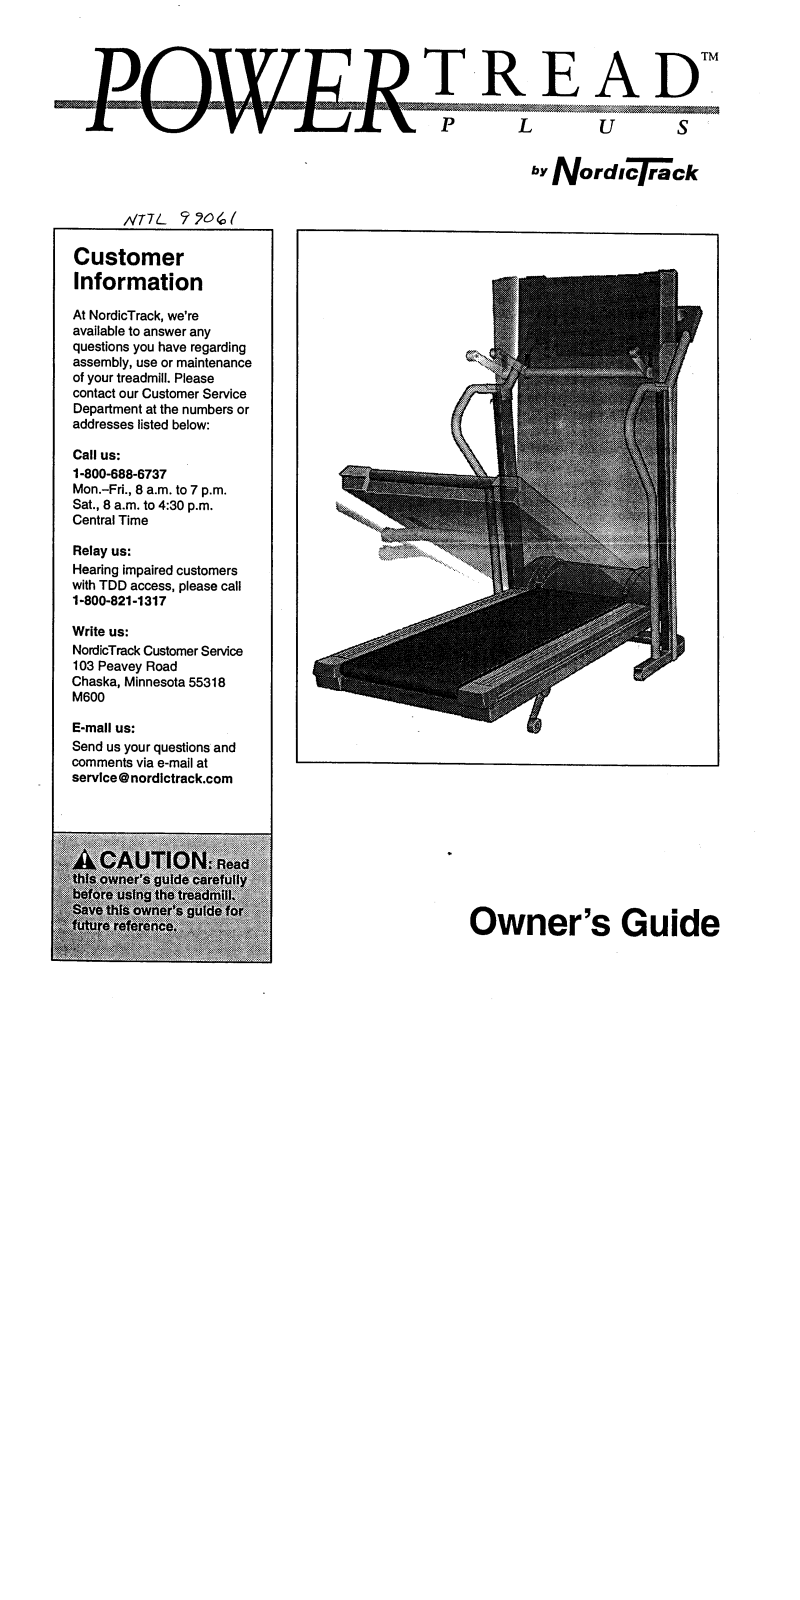 NordicTrack NTTL99061 Owner's Manual